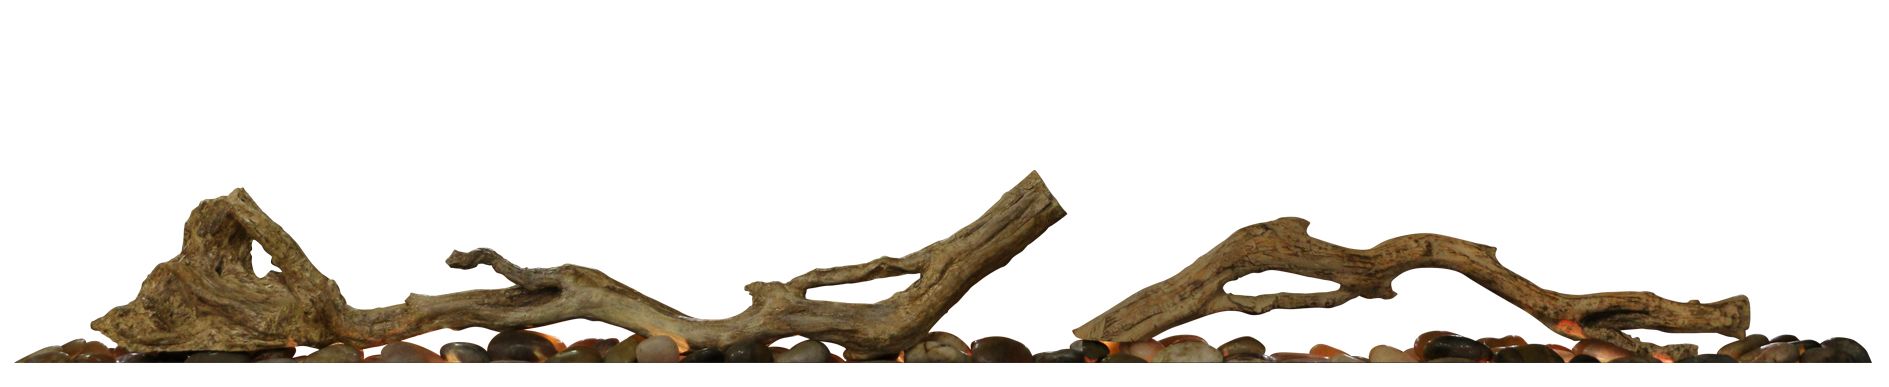 Dimplex Driftwood pour Ignite XL 50"